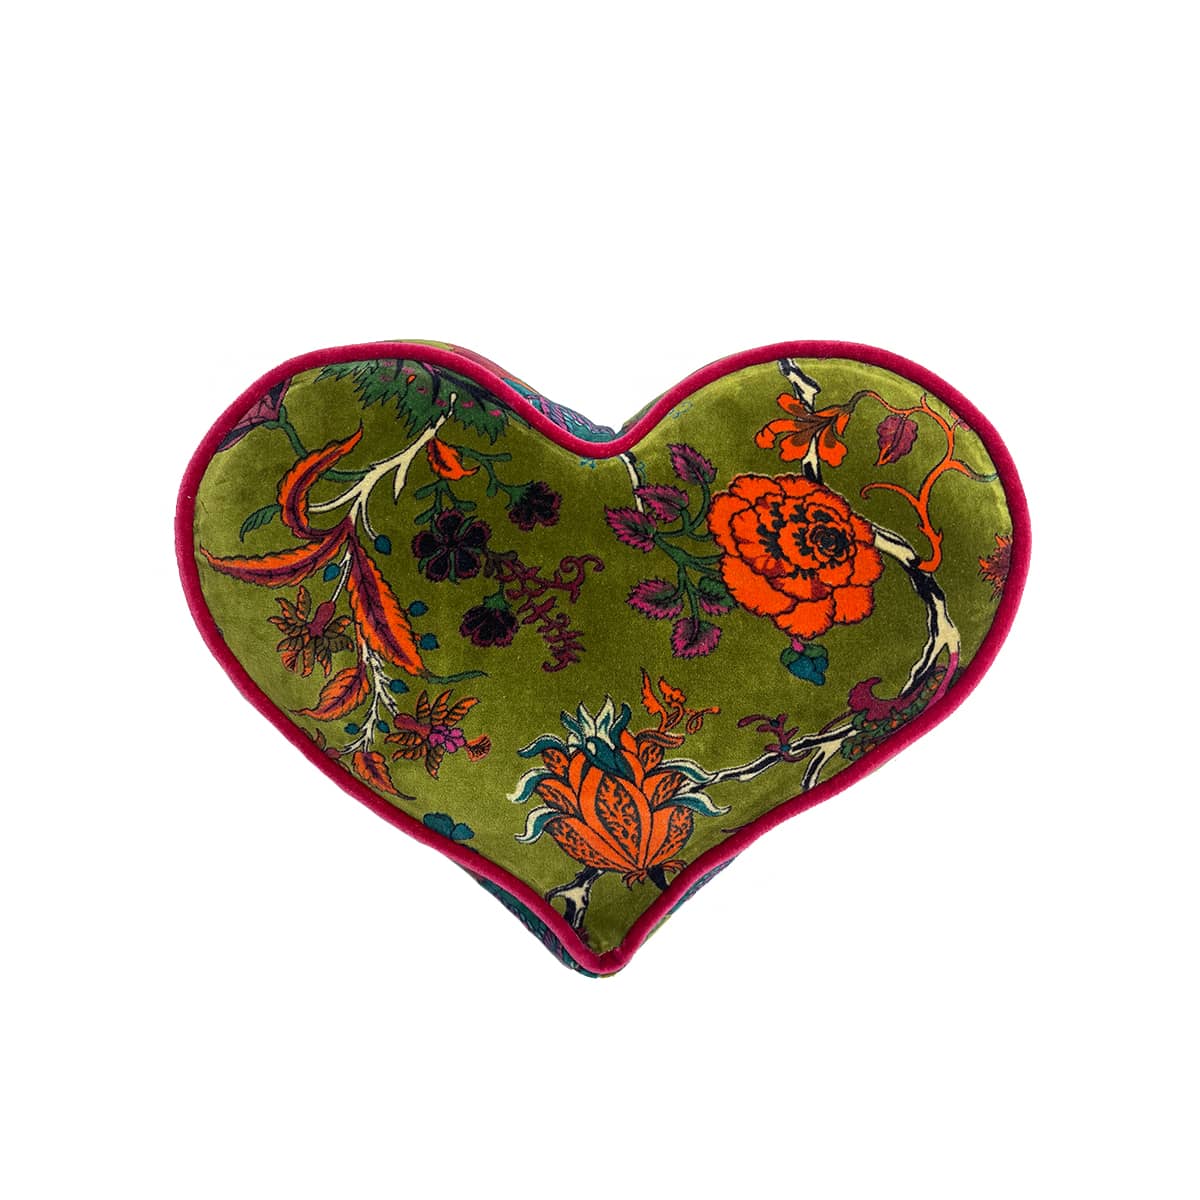 Heart Pillow – Floral on moss green